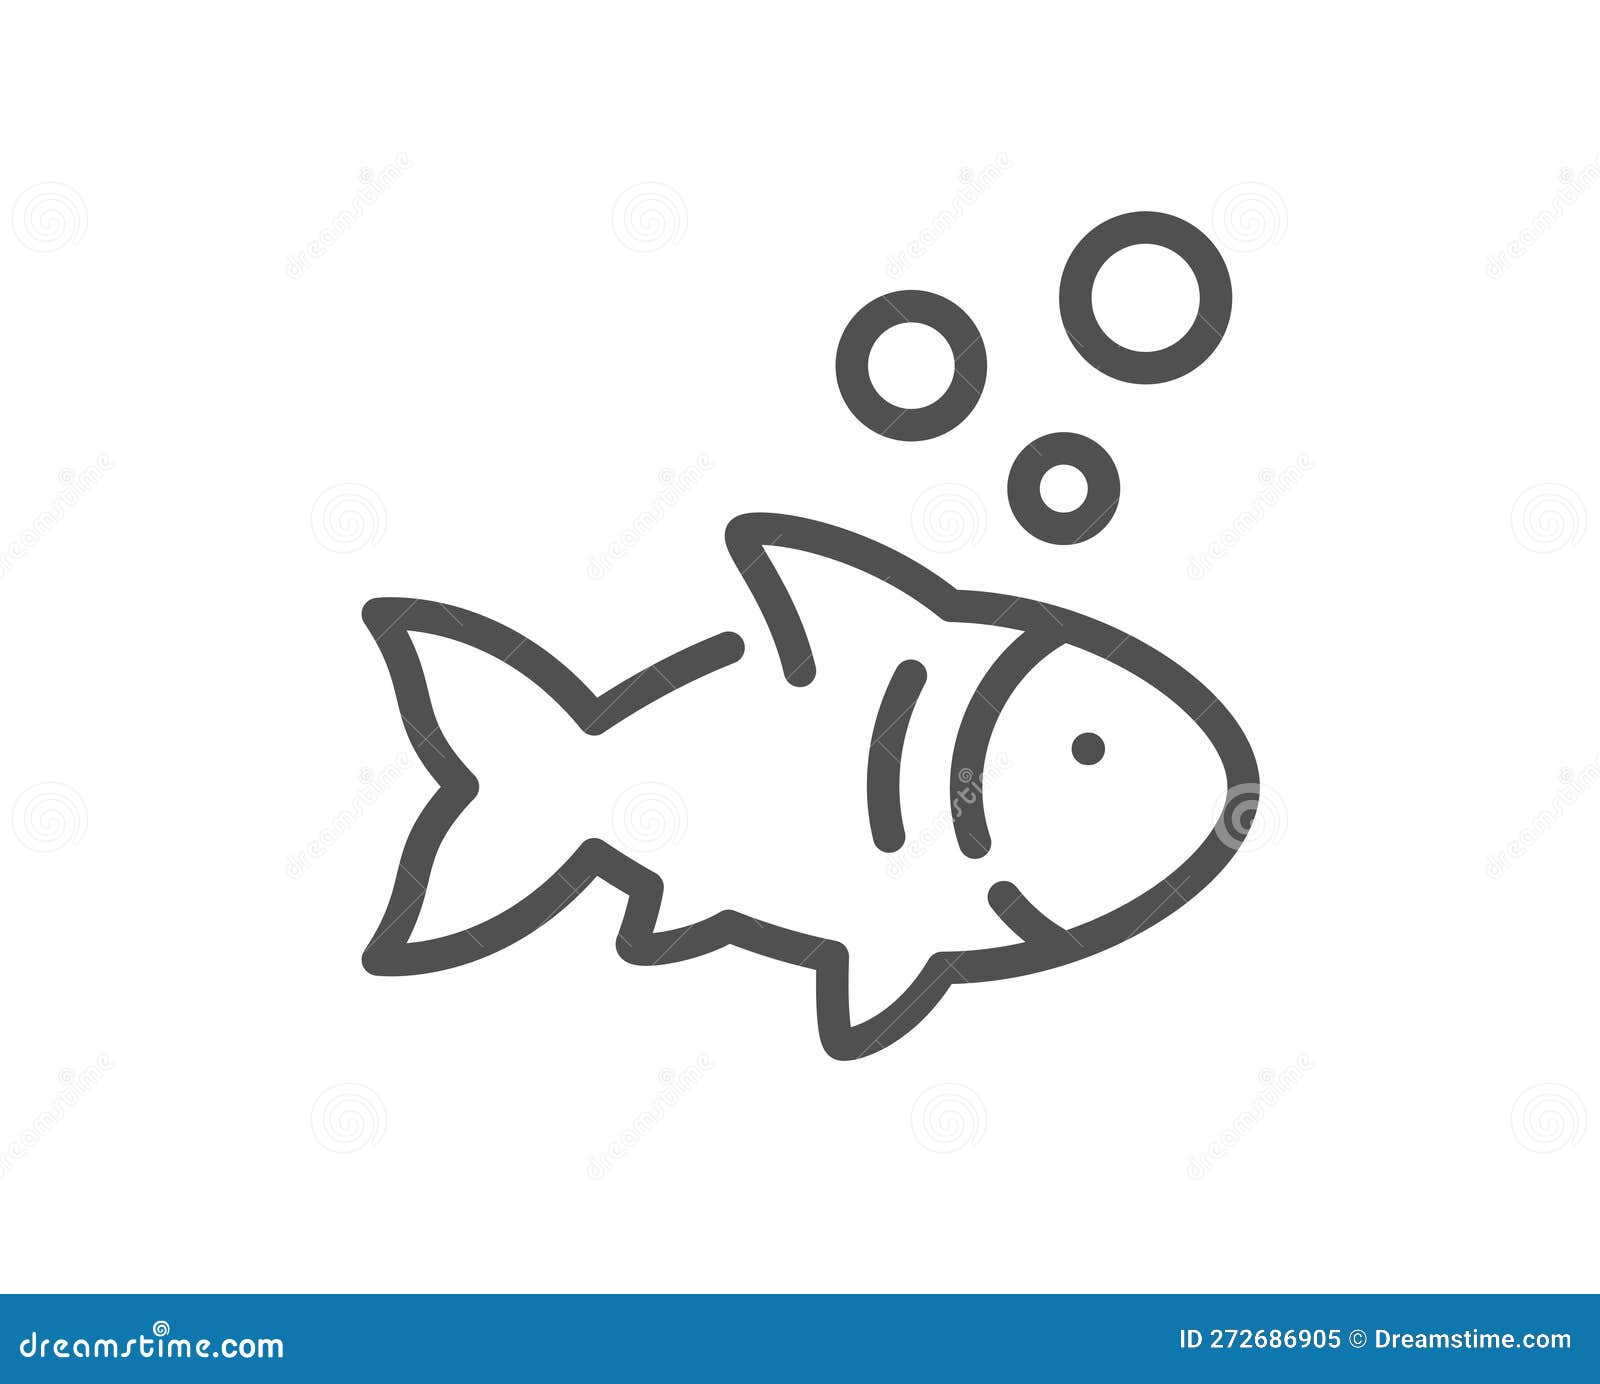 鱼线图标. 捕鱼标志. 矢量向量例证. 插画包括有安排, 符号, 例证, 图标